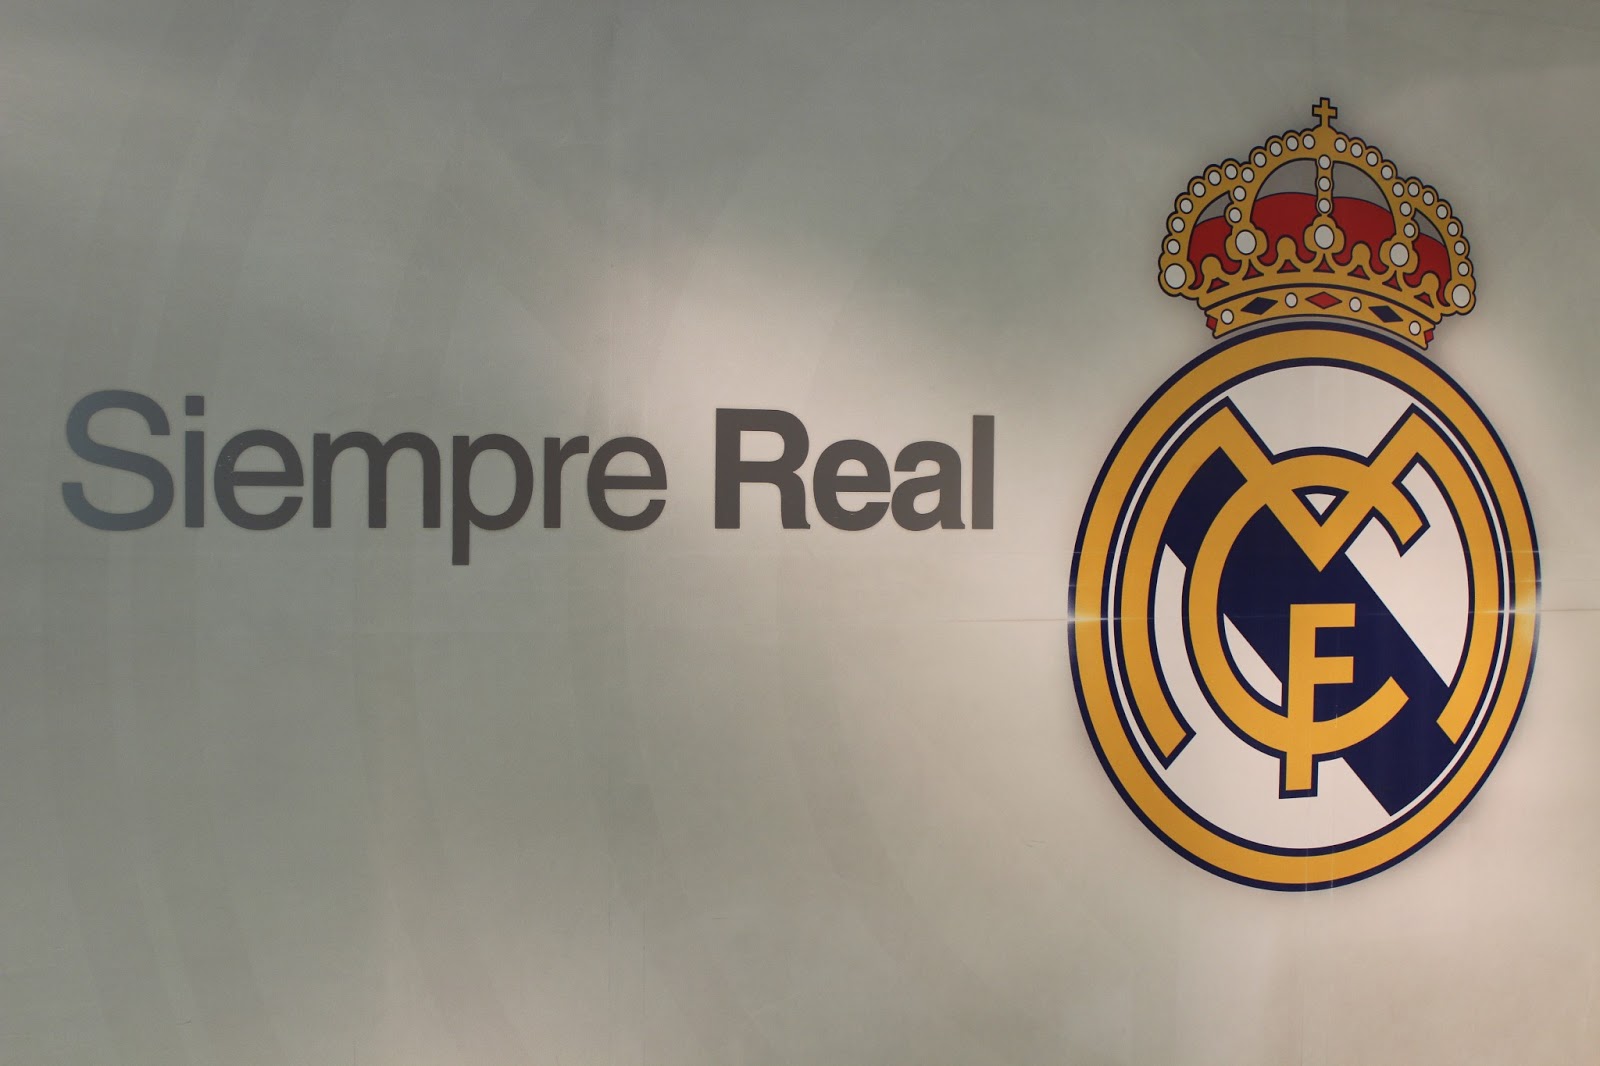 Real Madrid uniform